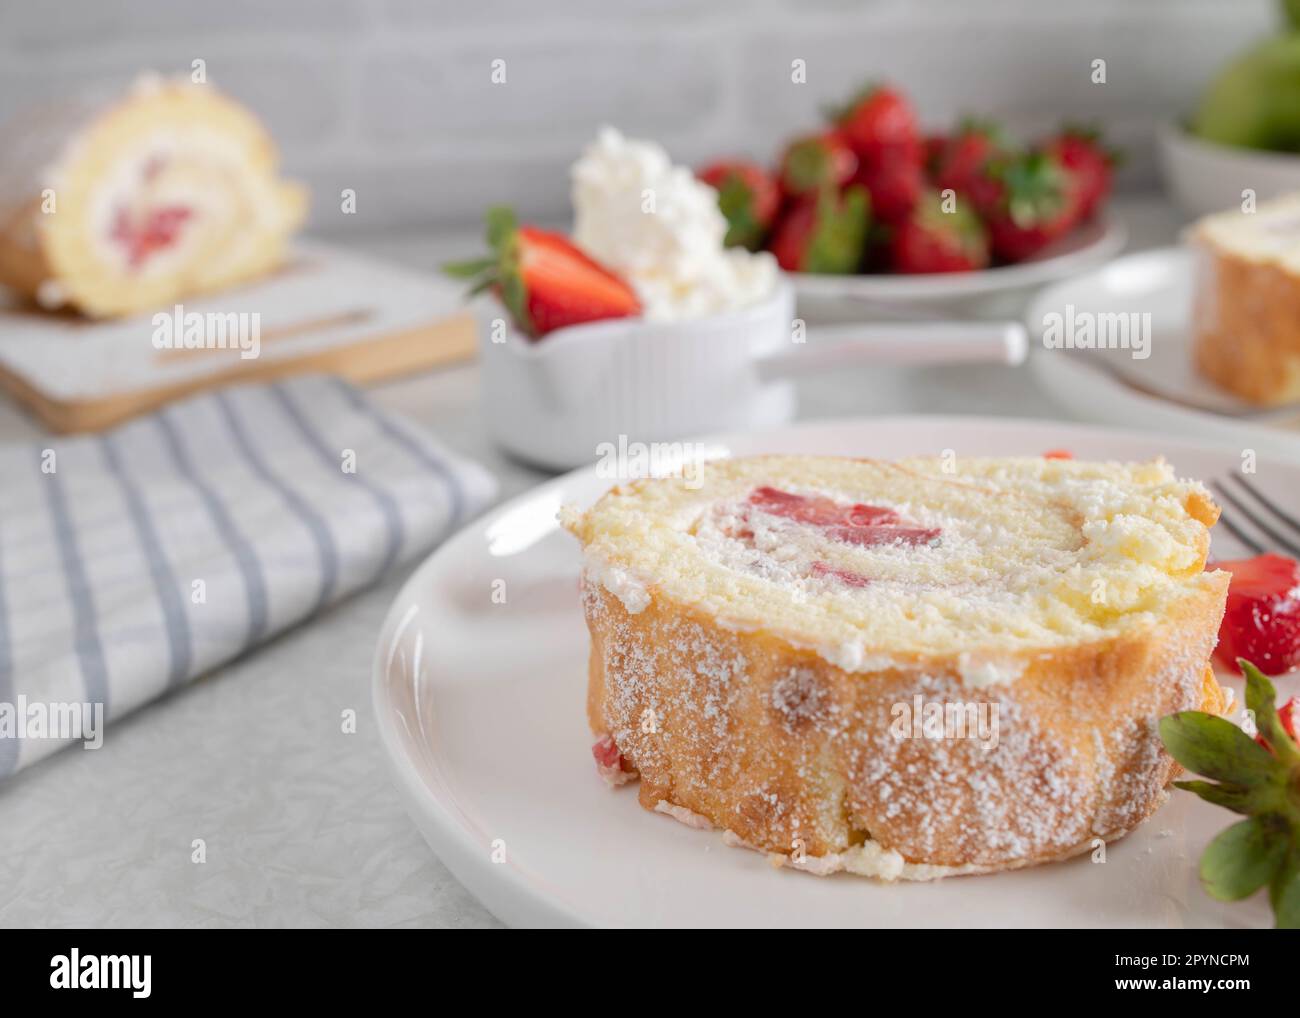 Rebanada de rollo suizo con crema batida y relleno de fresa en un plato sobre fondo claro Foto de stock